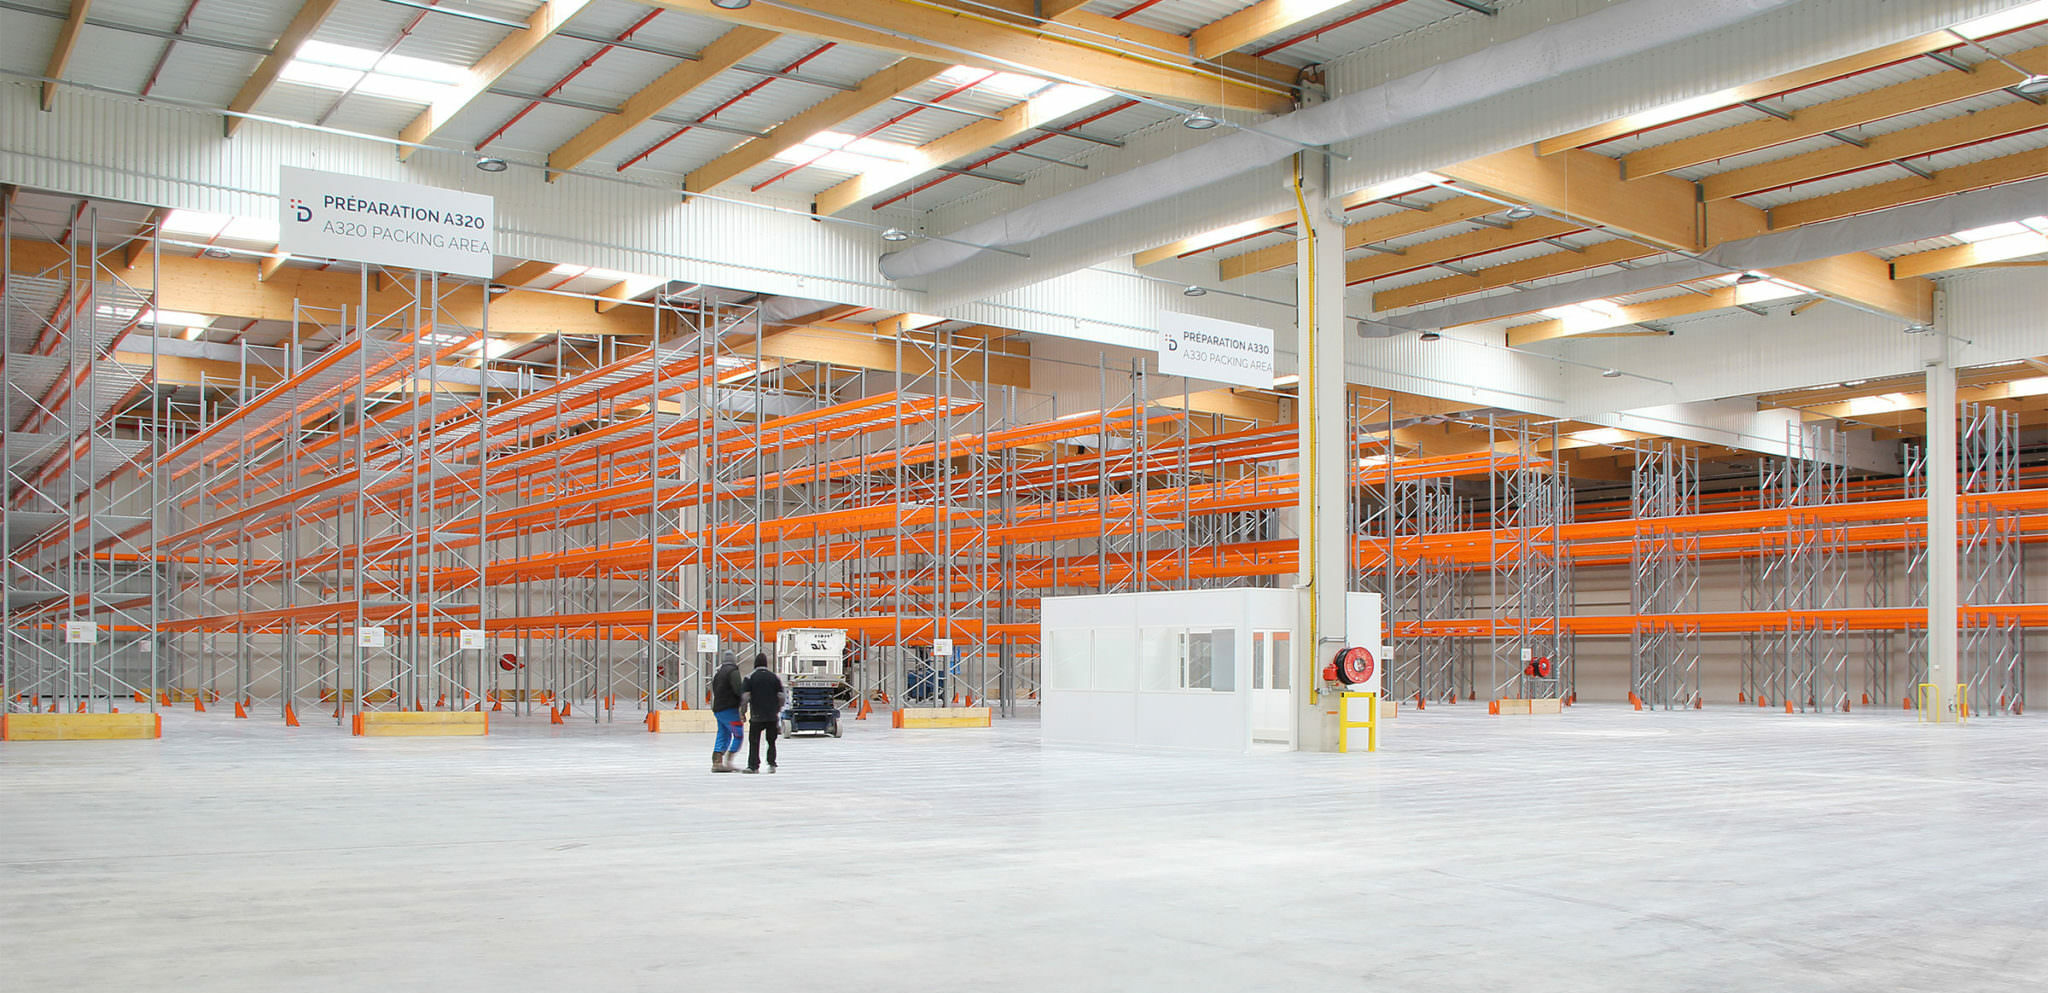 Photographie du hangar de stockage à sa livraison, les espaces des rangements vide nous laisse voir la grandeur du volume, bardage blanc, skydome et poutres bois